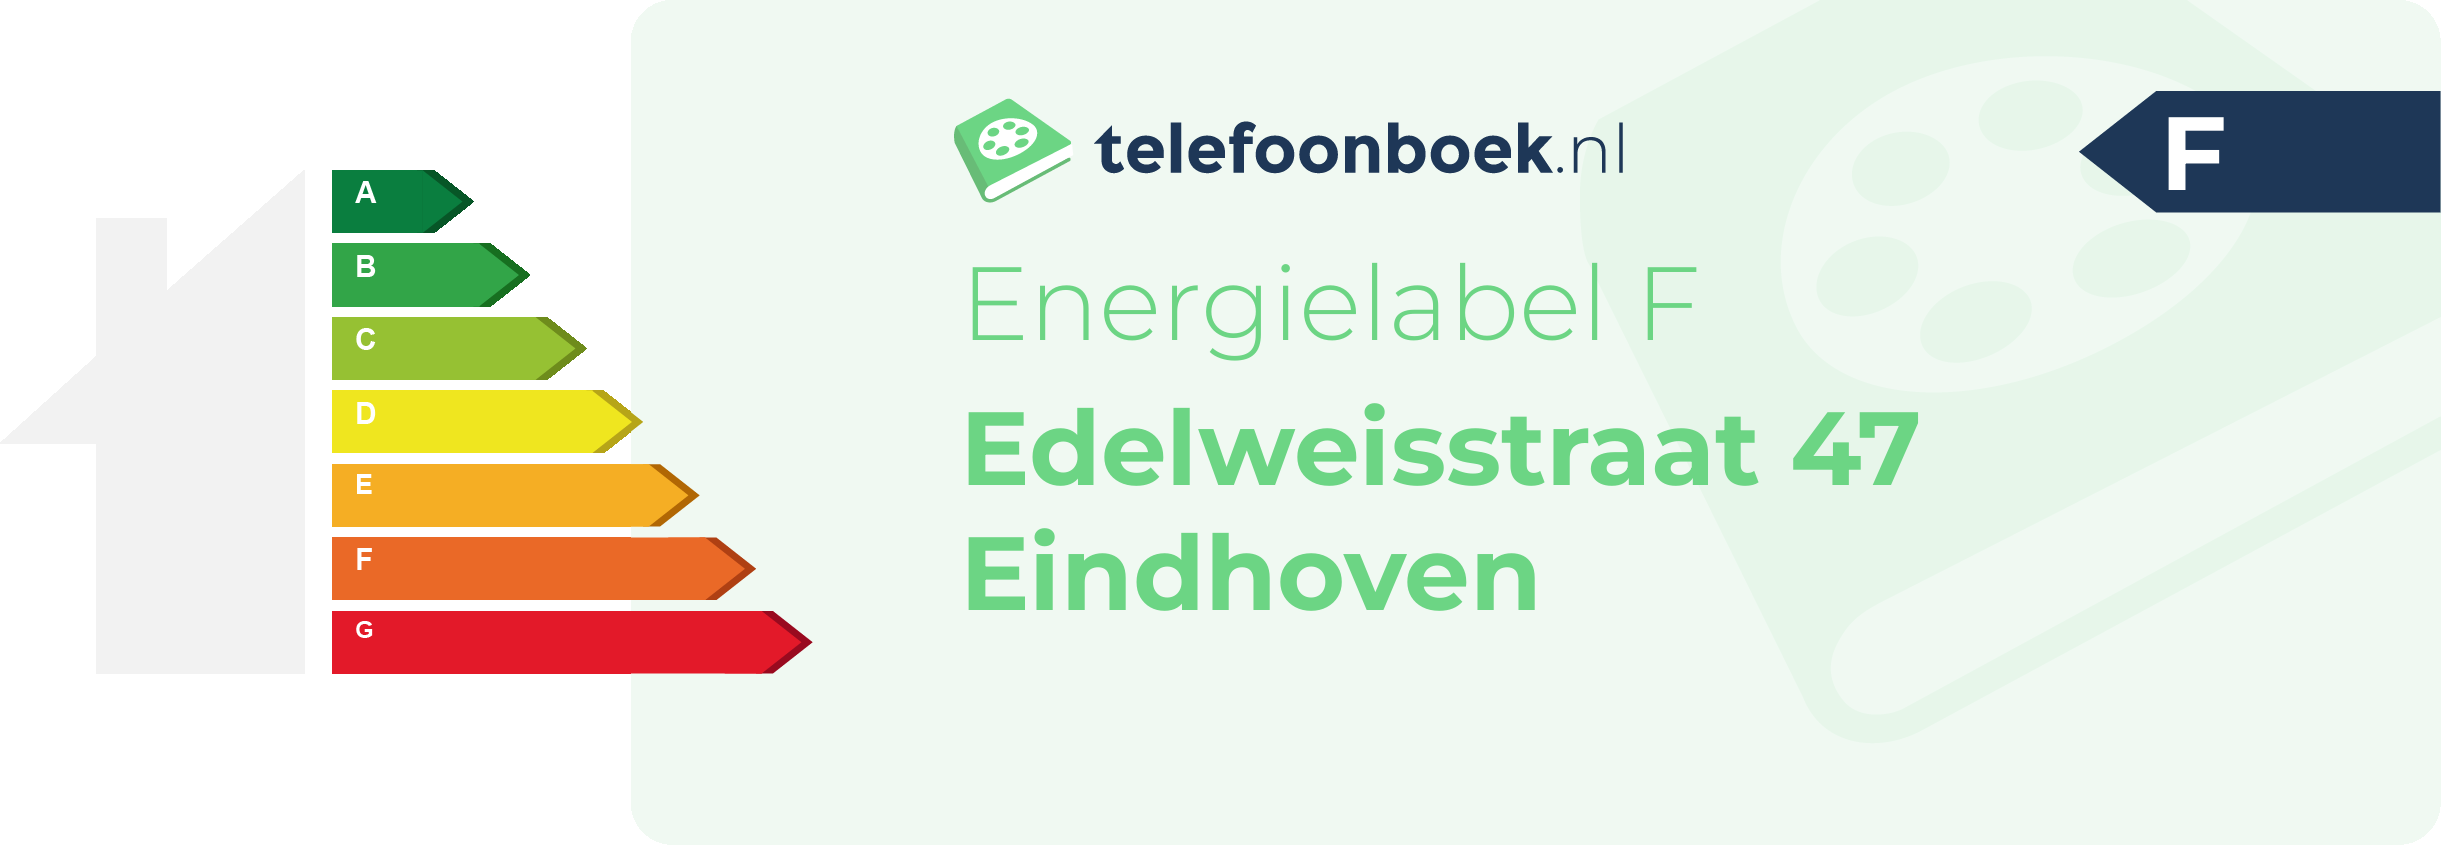 Energielabel Edelweisstraat 47 Eindhoven